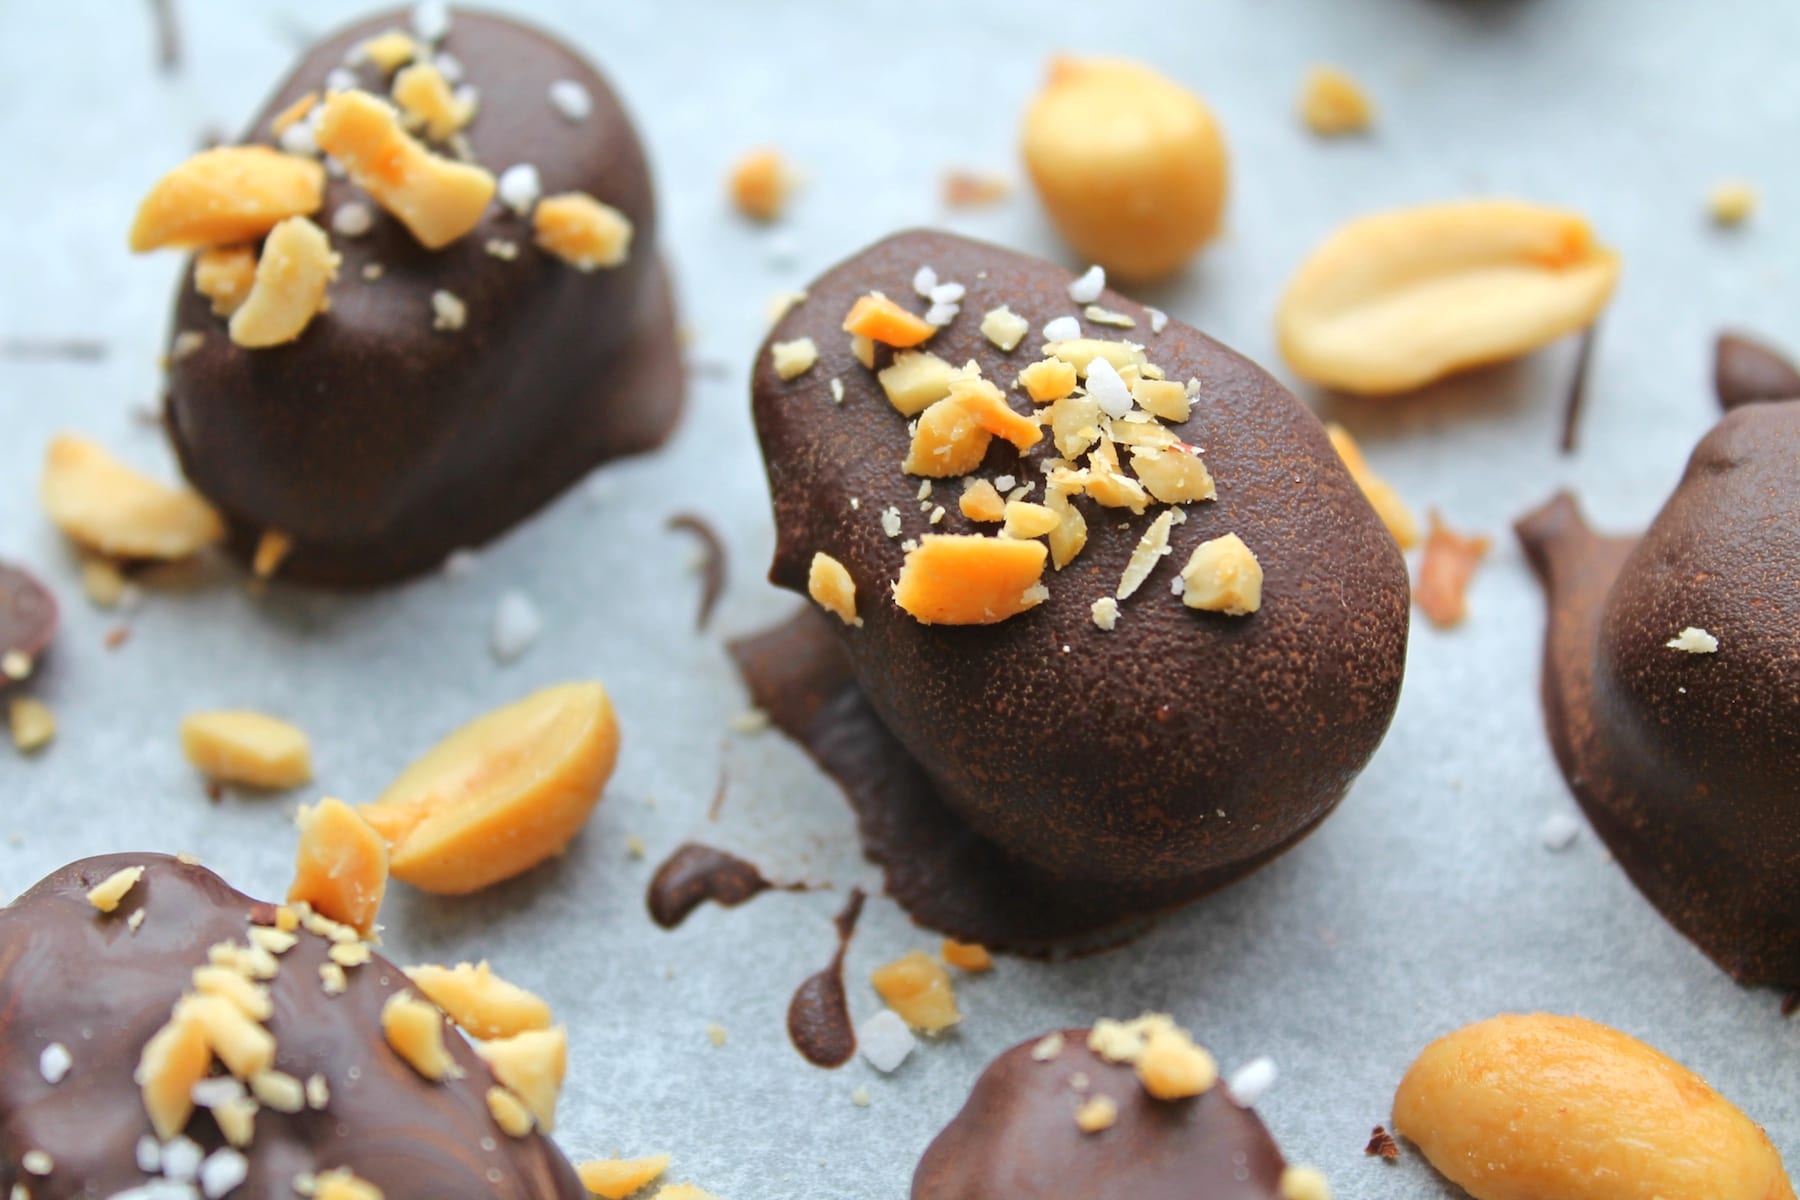 Chokolade påskeæg med peanut butter | Perfekt påskehygge